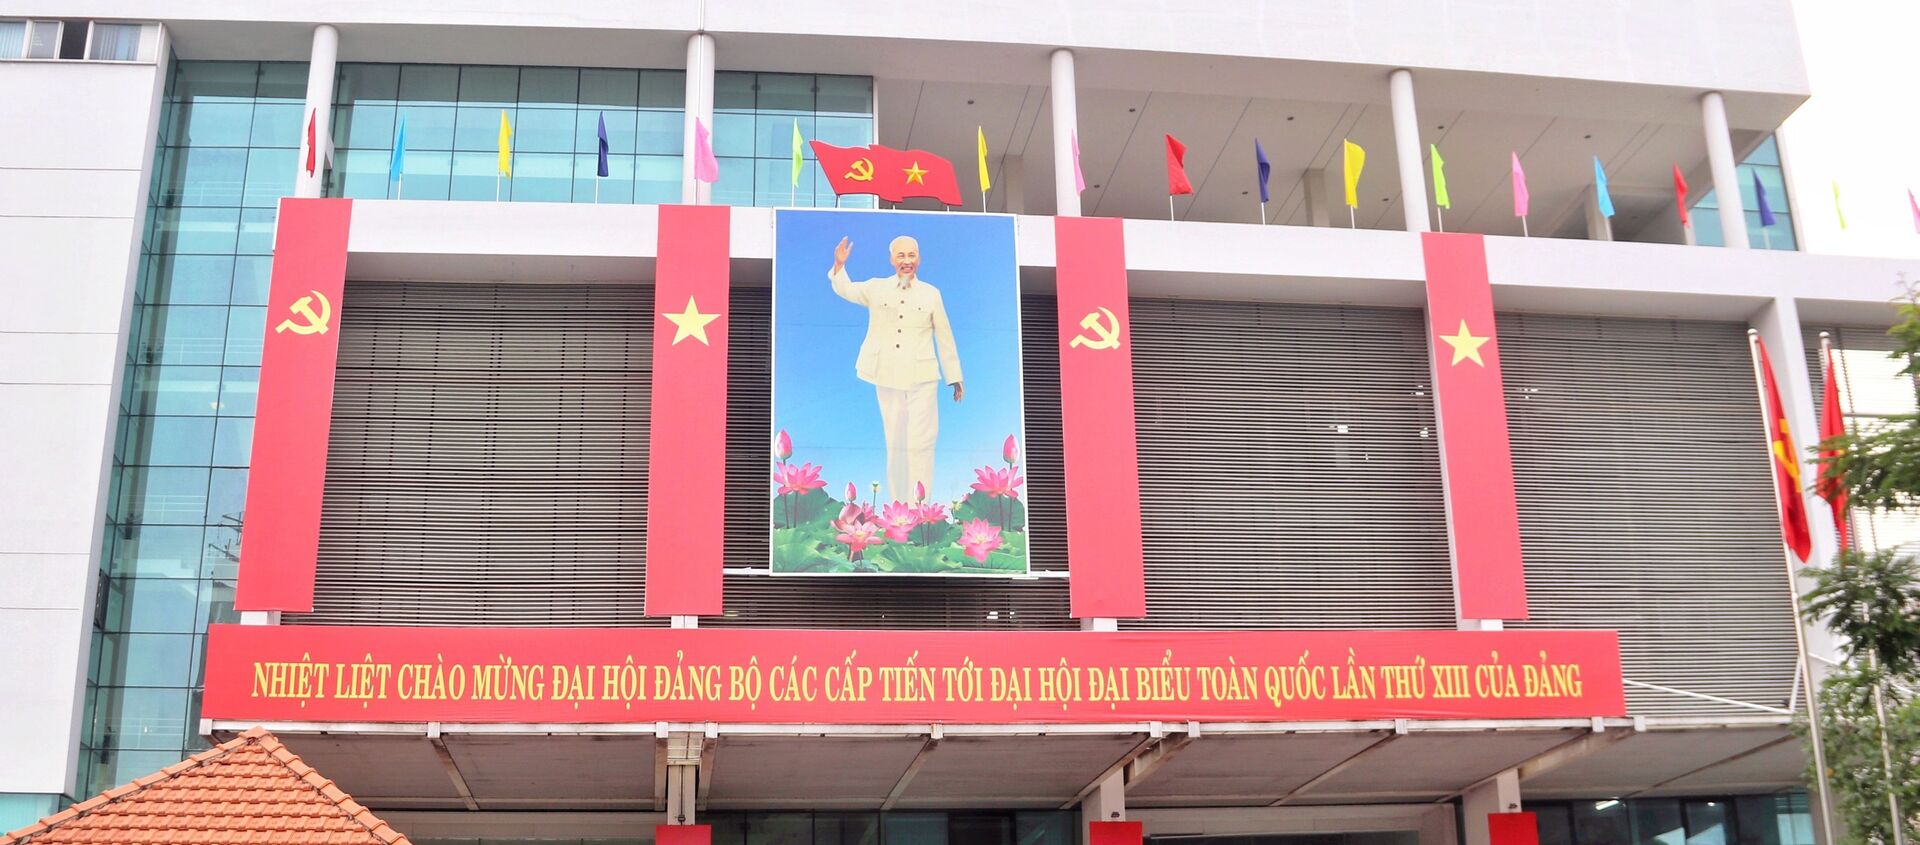 Thành phố Hồ Chí Minh rực rỡ cờ hoa chào mừng Đại hội đại biểu toàn quốc lần thứ XIII của Đảng - Sputnik Việt Nam, 1920, 21.01.2021